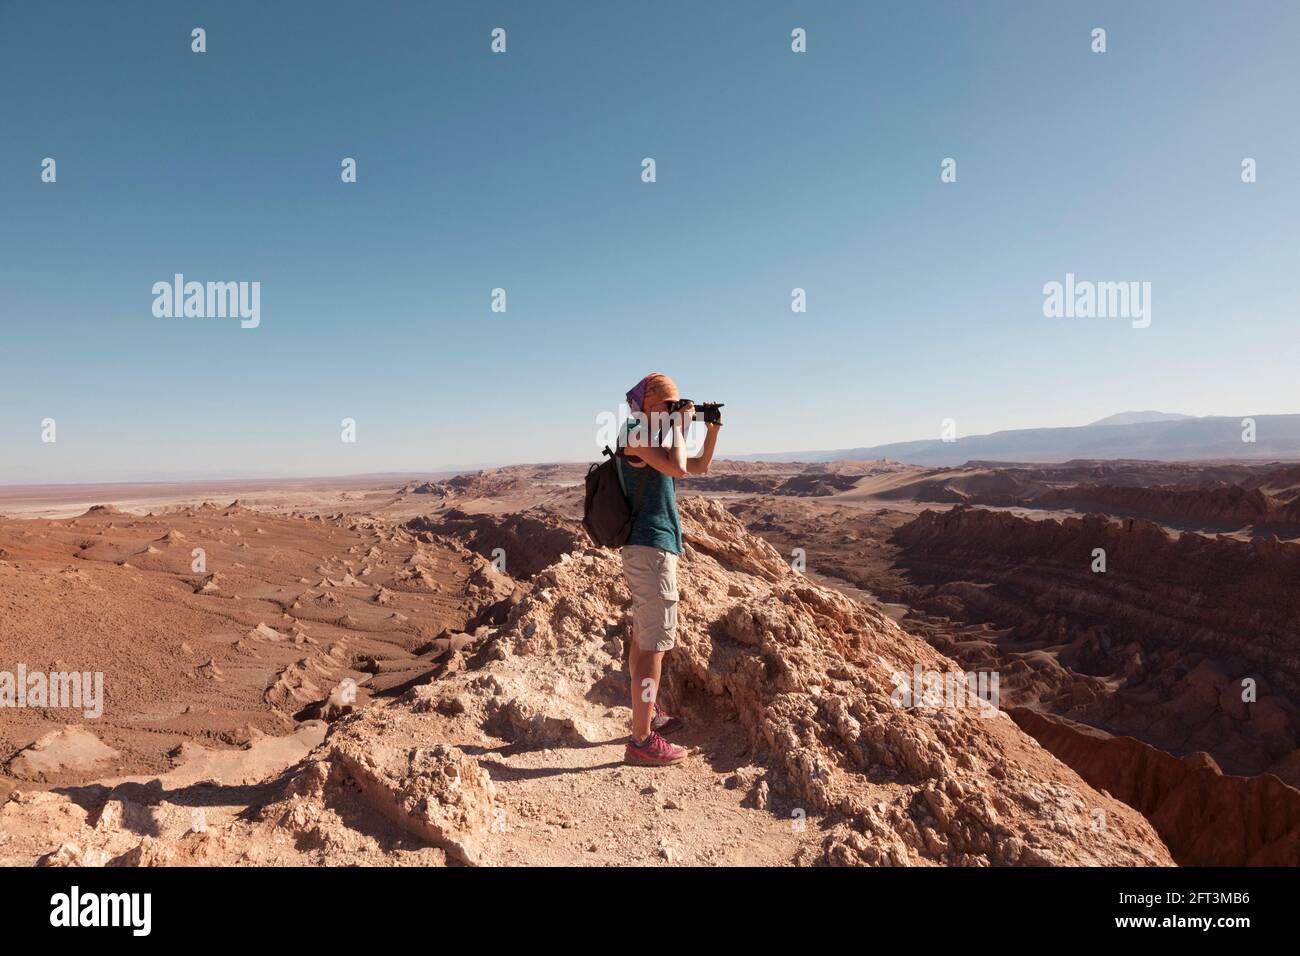 A tourist takes landscape photographs of the amazing desert landscape near San Pedro De Atacama, Chile. Stock Photo